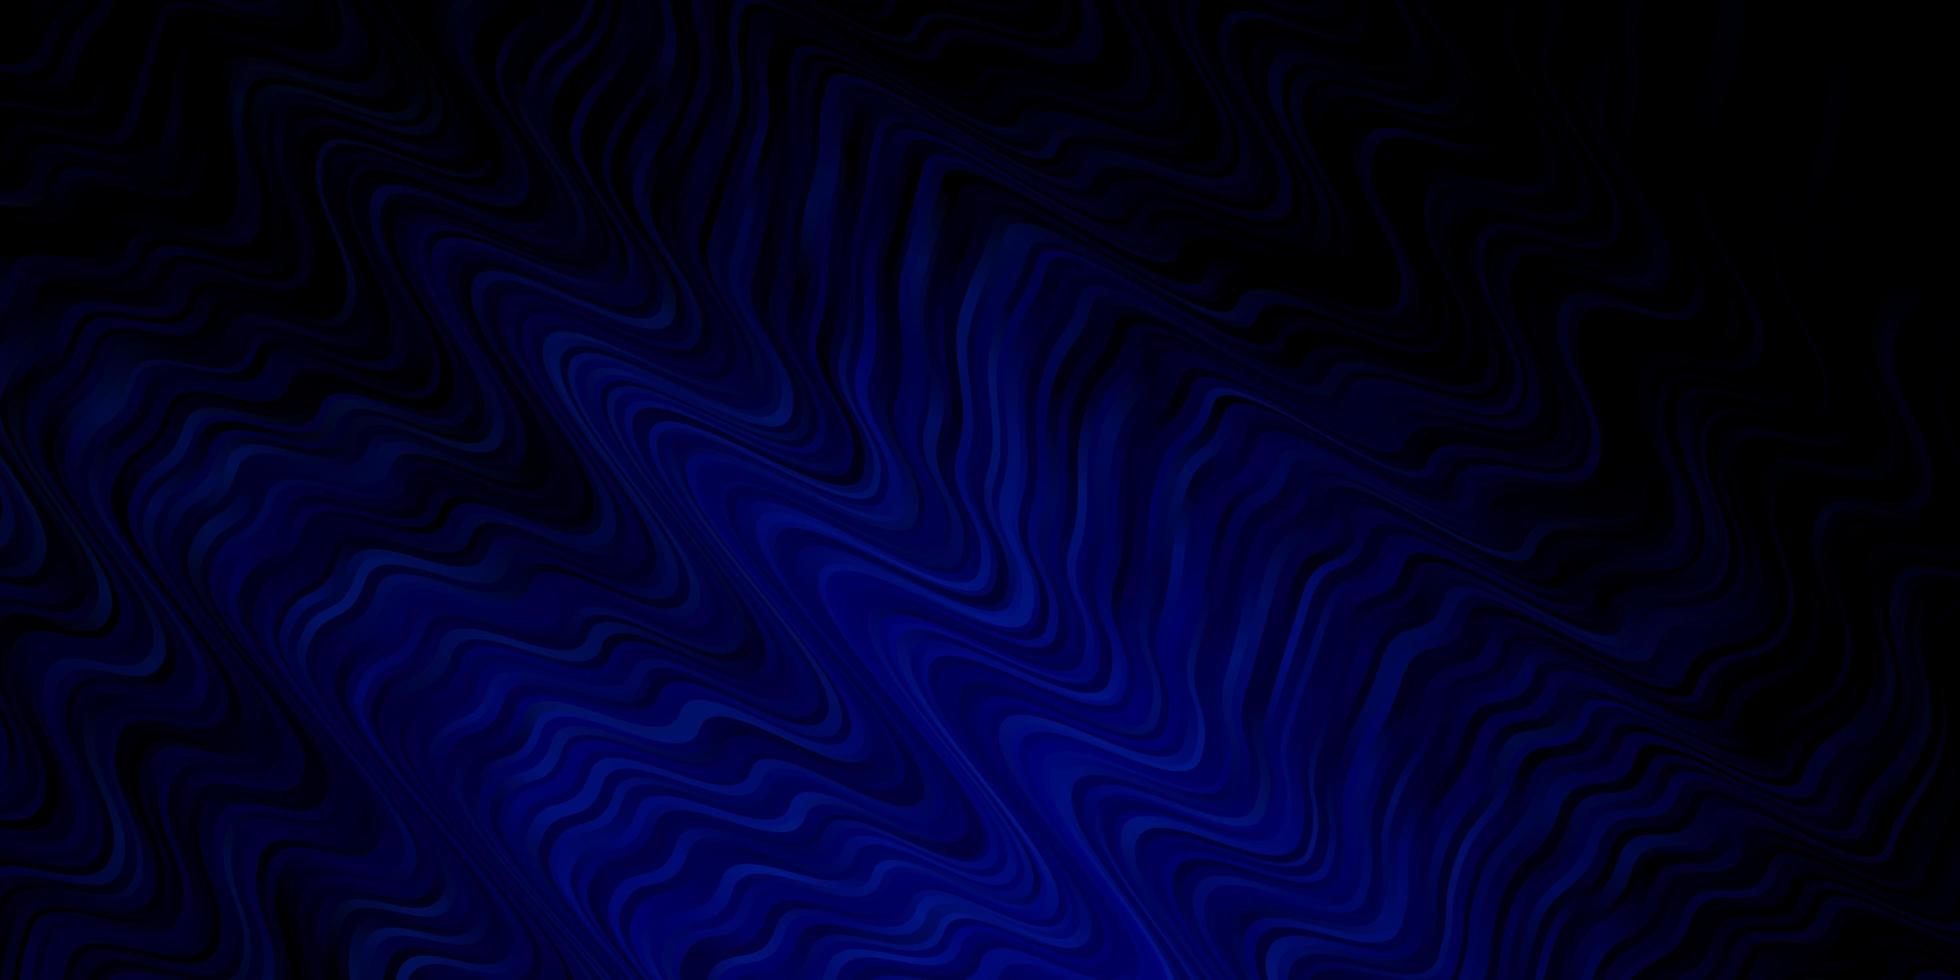 modelo de vetor azul escuro com curvas nova ilustração colorida com linhas dobradas melhor design para o banner do seu cartaz de anúncio